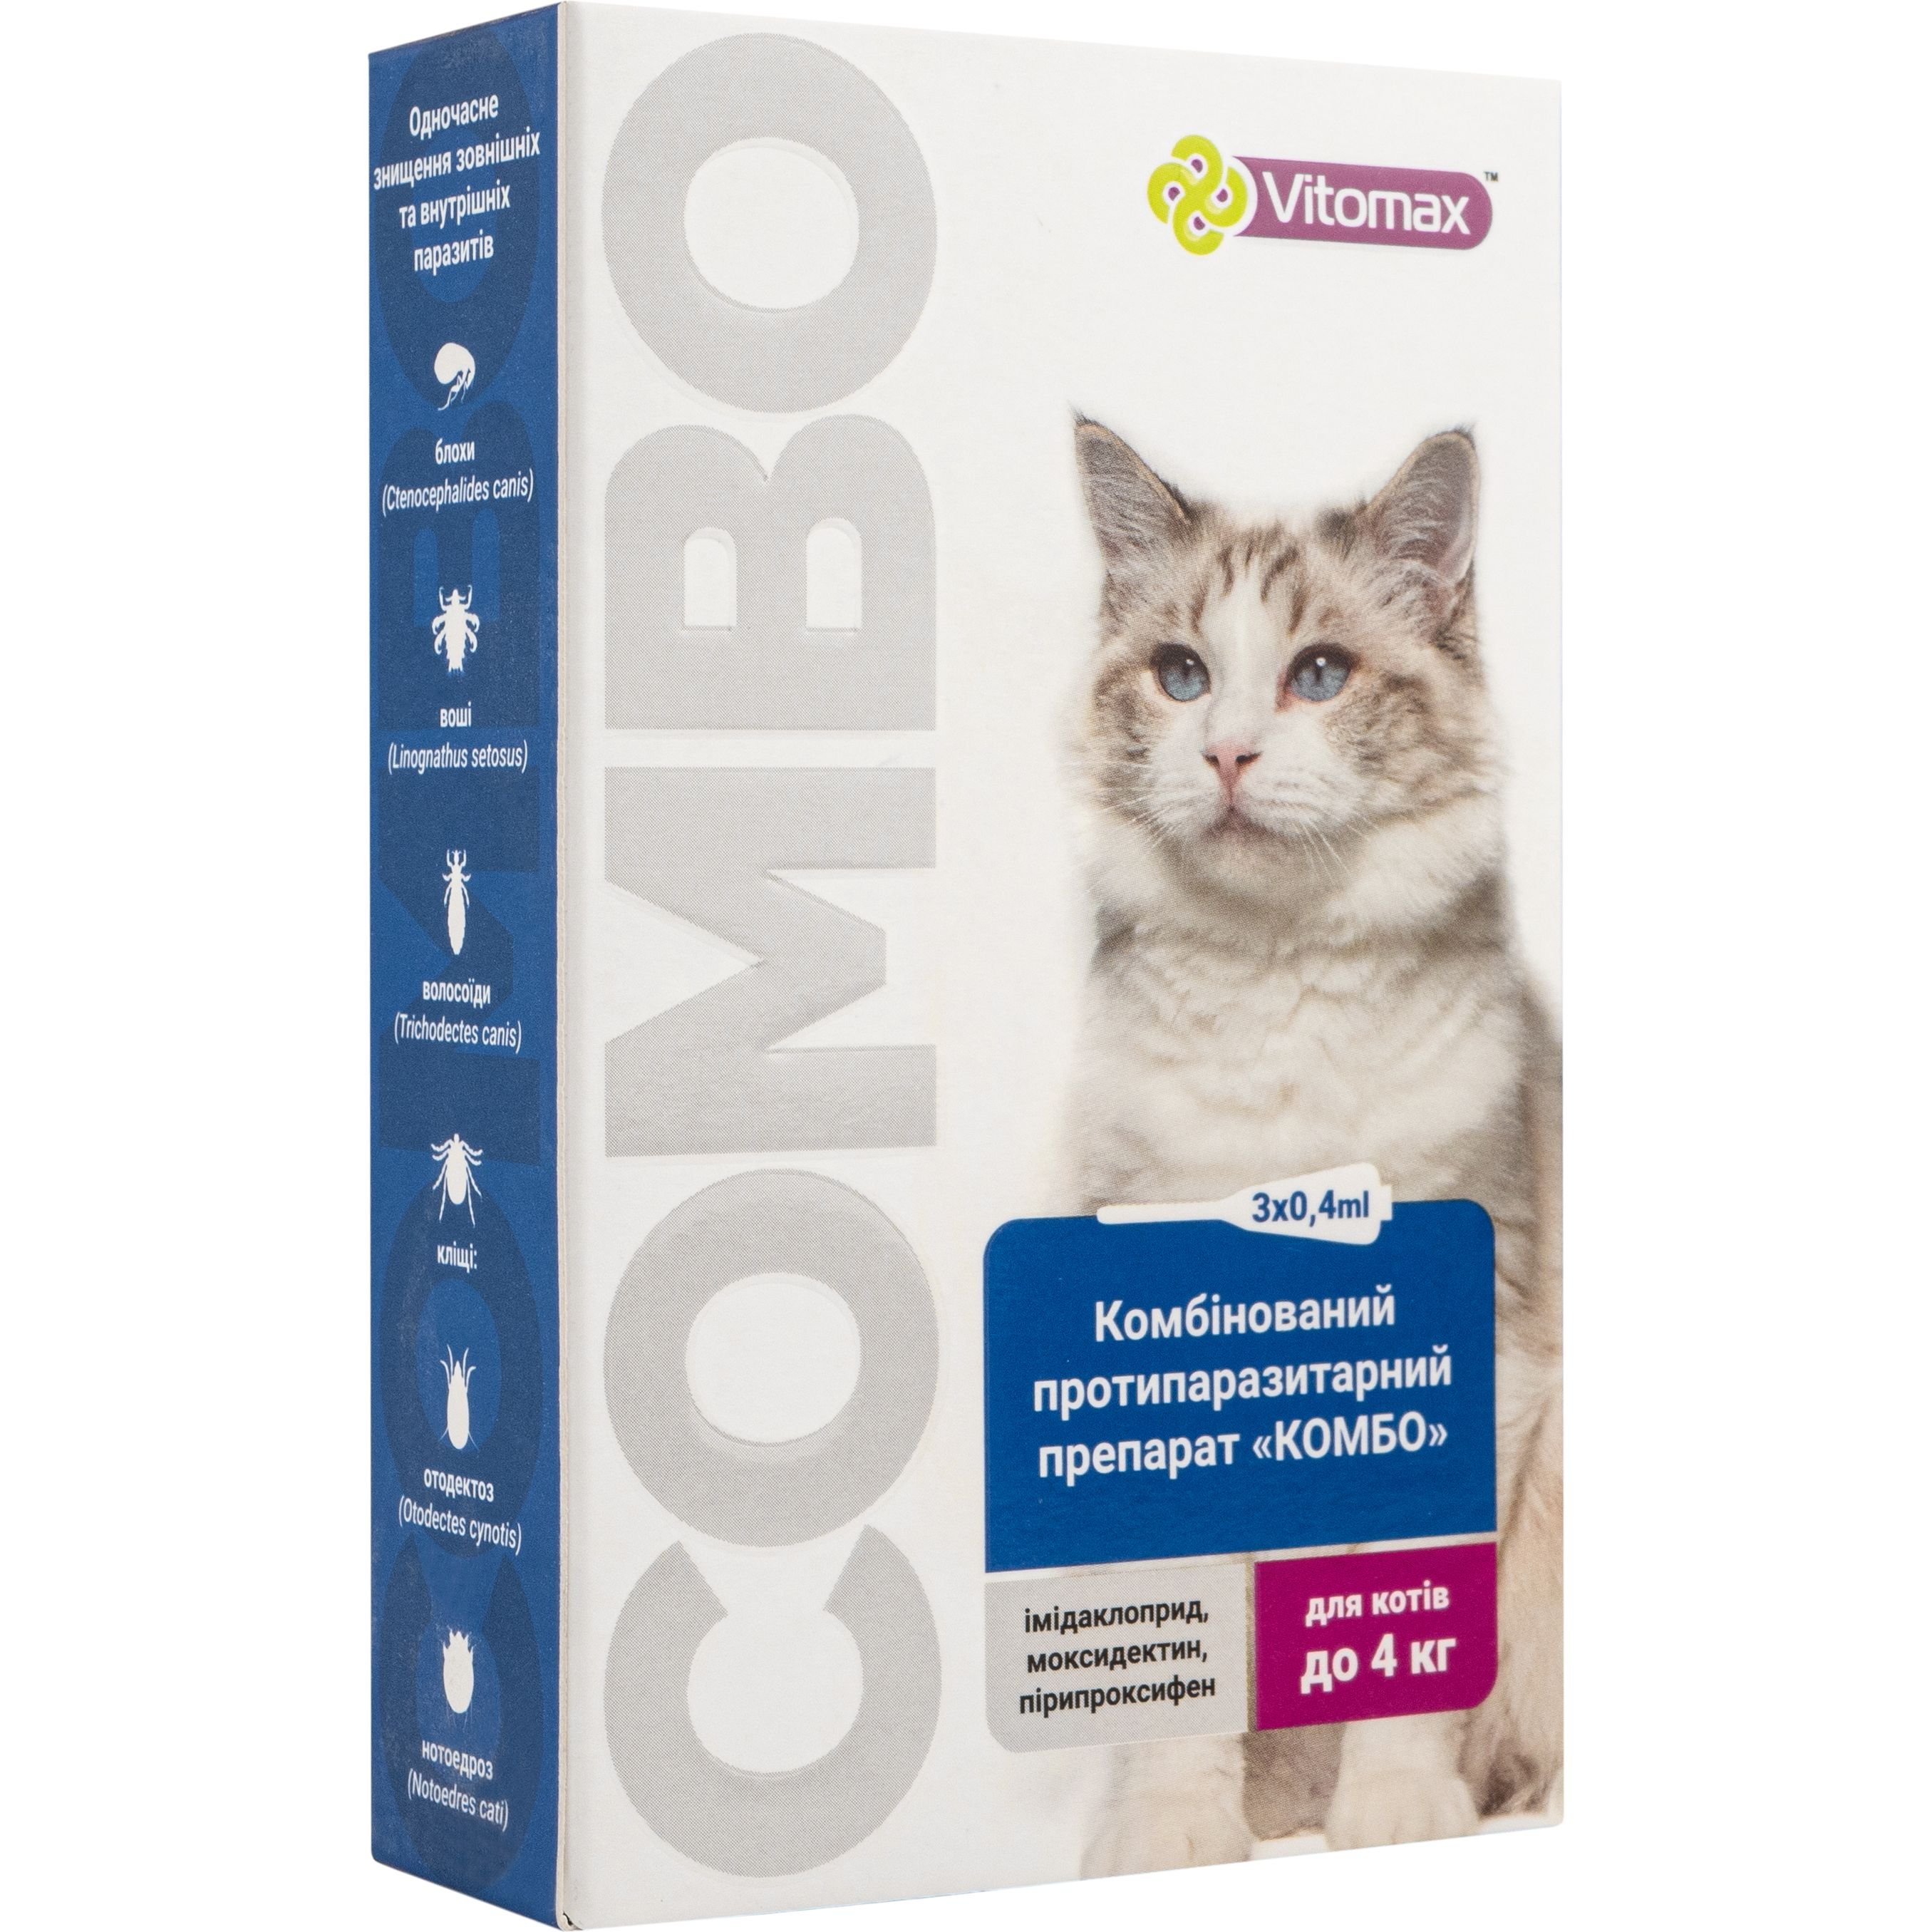 Краплі Vitomax комбо для котів до 4 кг, 0.4 мл, 3 шт. - фото 1